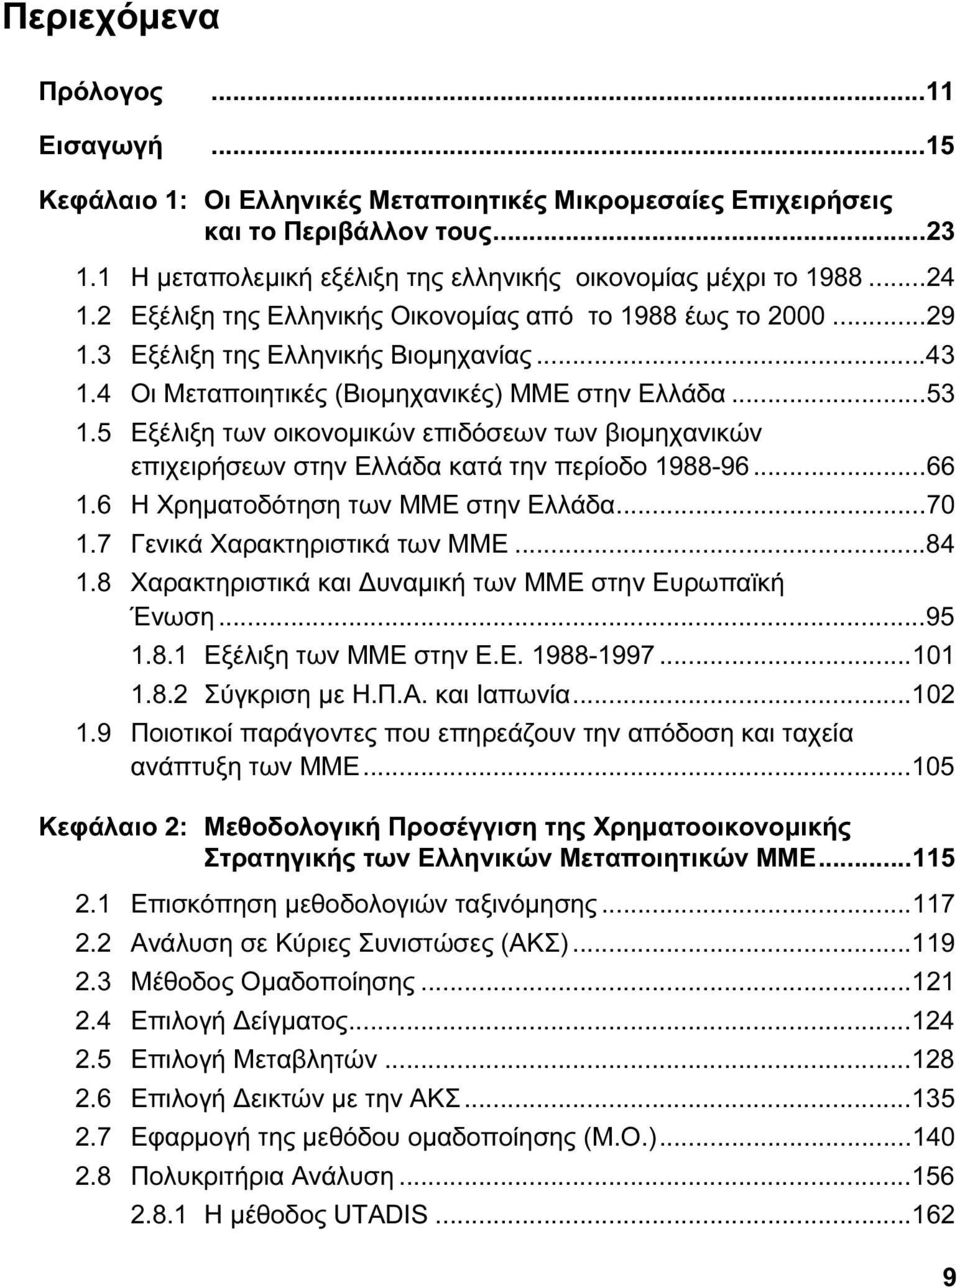 5 Εξέλιξη των οικονομικών επιδόσεων των βιομηχανικών επιχειρήσεων στην Ελλάδα κατά την περίοδο 1988-96...66 1.6 Η Χρηματοδότηση των ΜΜΕ στην Ελλάδα...70 1.7 Γενικά Χαρακτηριστικά των ΜΜΕ...84 1.